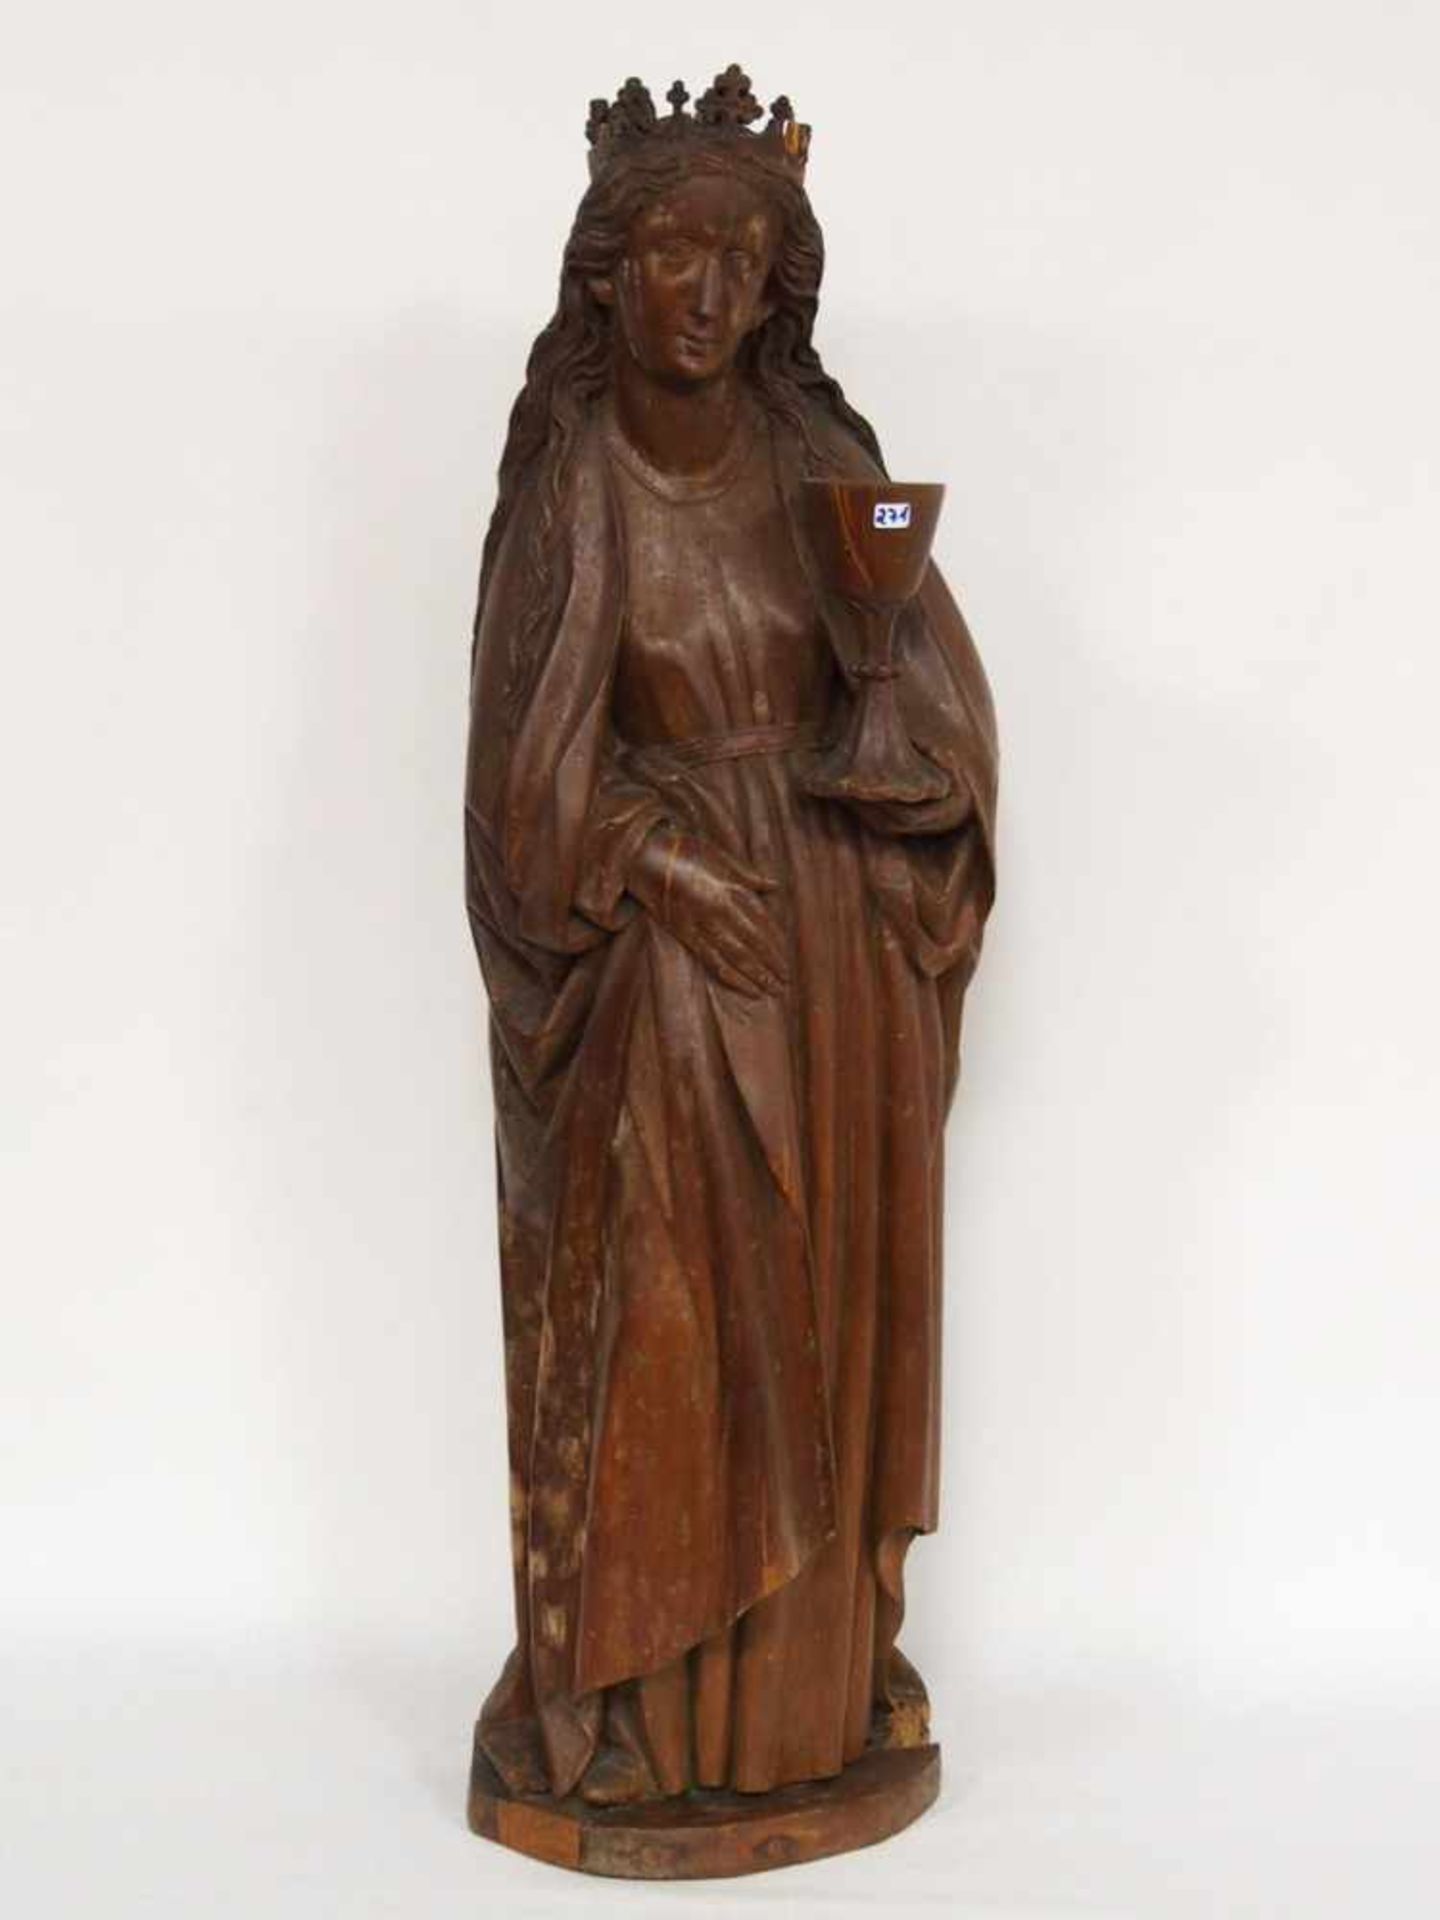 Heilige BarbaraHolz, geschnitzt, rückseitig gehöhlt, braun lasiert, Schwaben, um 1480, Höhe 91 cm ( - Bild 3 aus 3